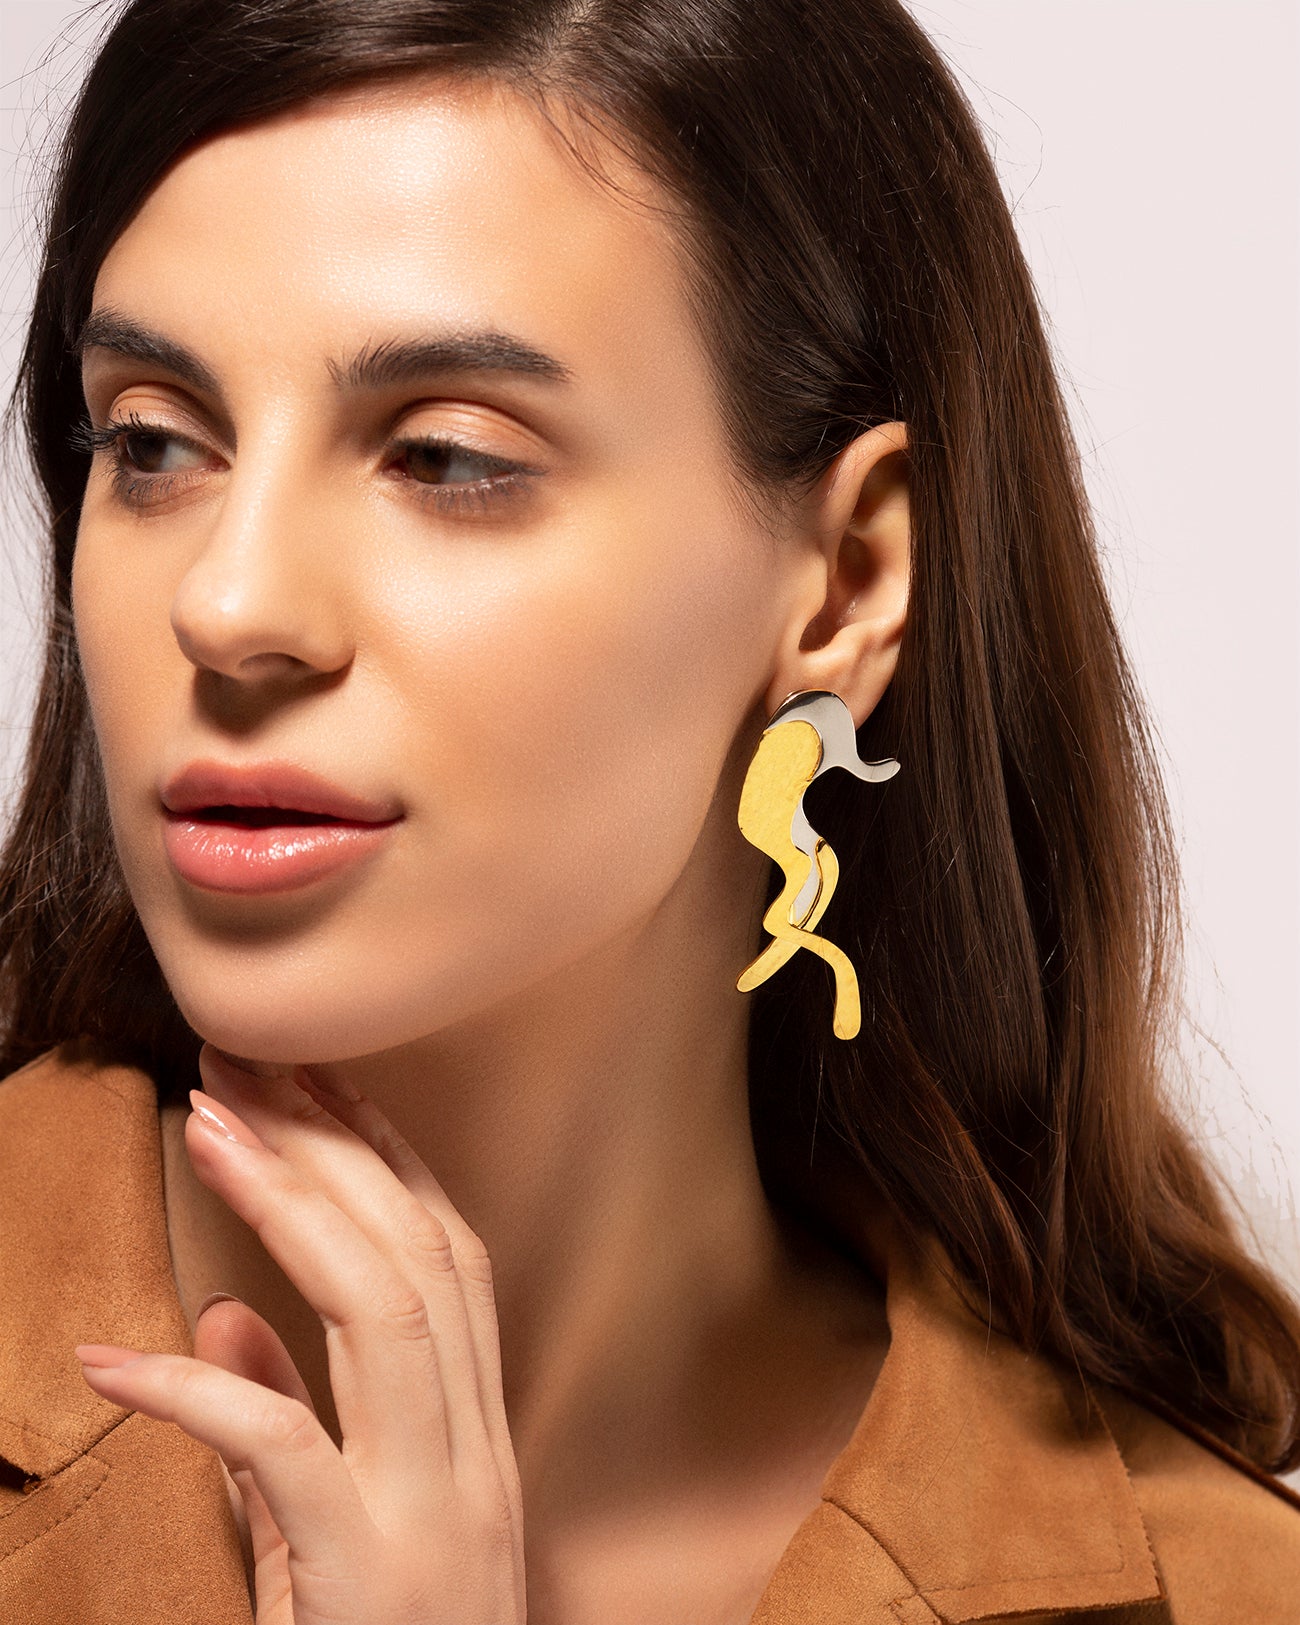 Dosado interchangeable earrings